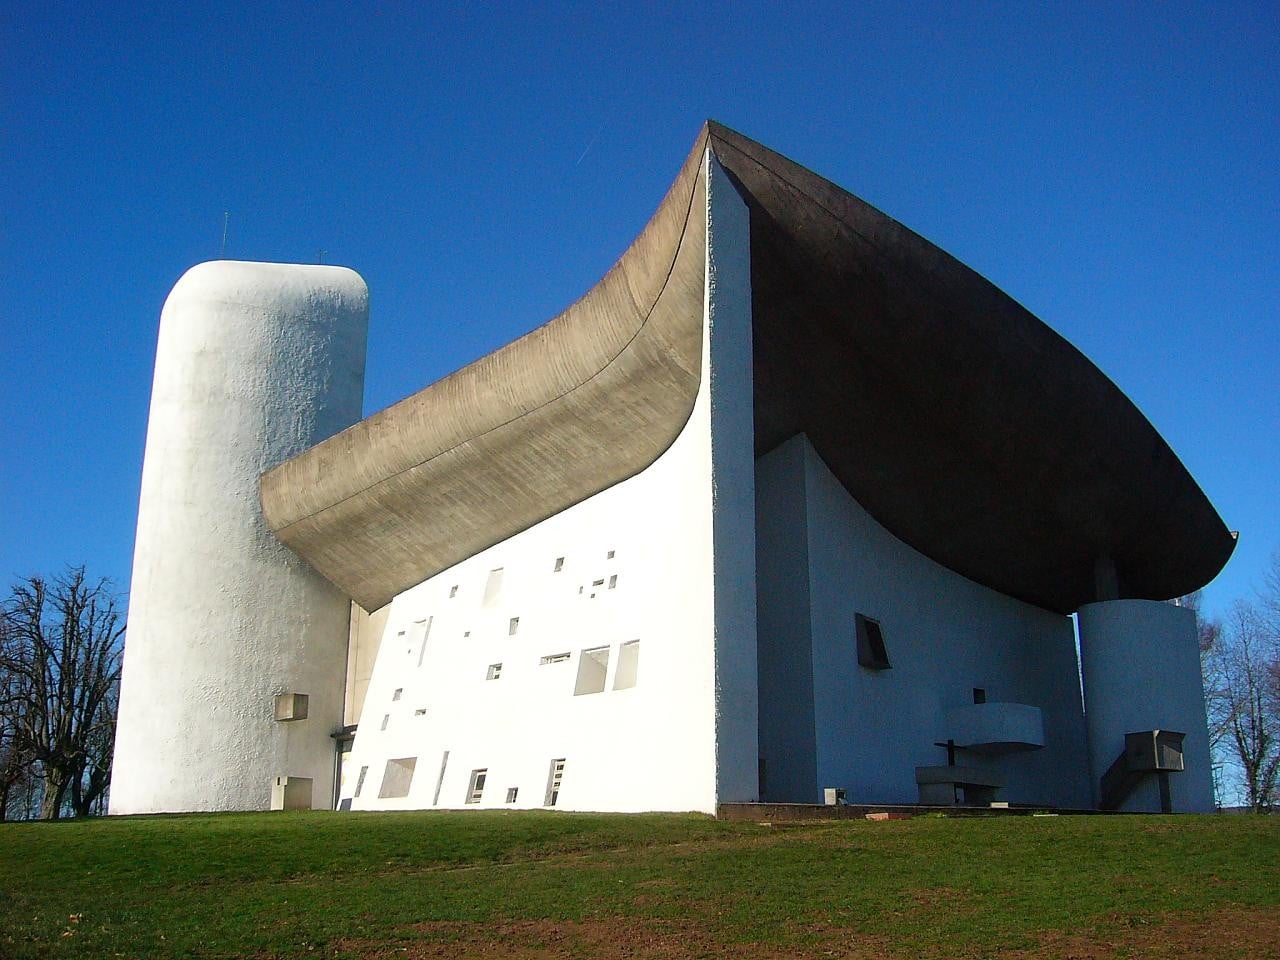 Ukończona w 1954 roku Kaplica Notre Dame du Haut (Matki Bożej na Górze) w Ronchamp jest jednym z najwspanialszych przykładów twórczości francusko-szwajcarskiego architekta Le Corbusiera. 
Fot. archdaily